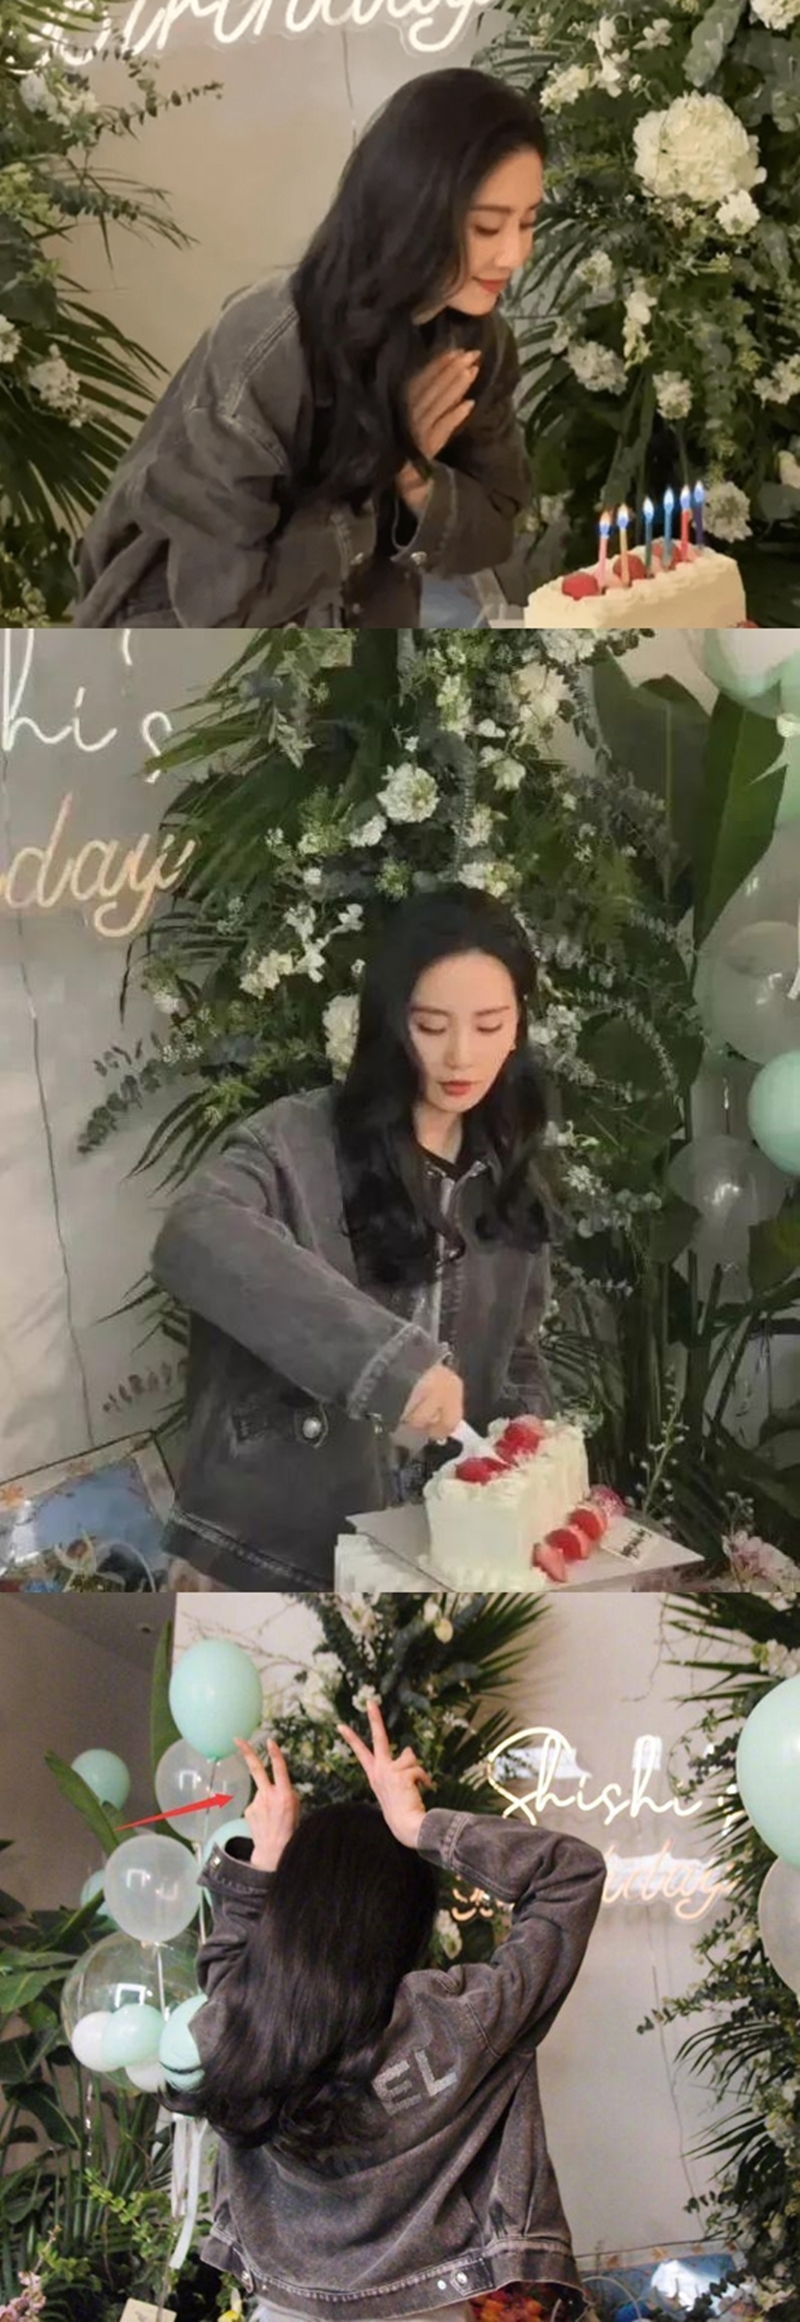 有眼尖的網友發現，在劉詩詩曬出的切蛋糕照片裡，手上的婚戒竟然也摘掉了。